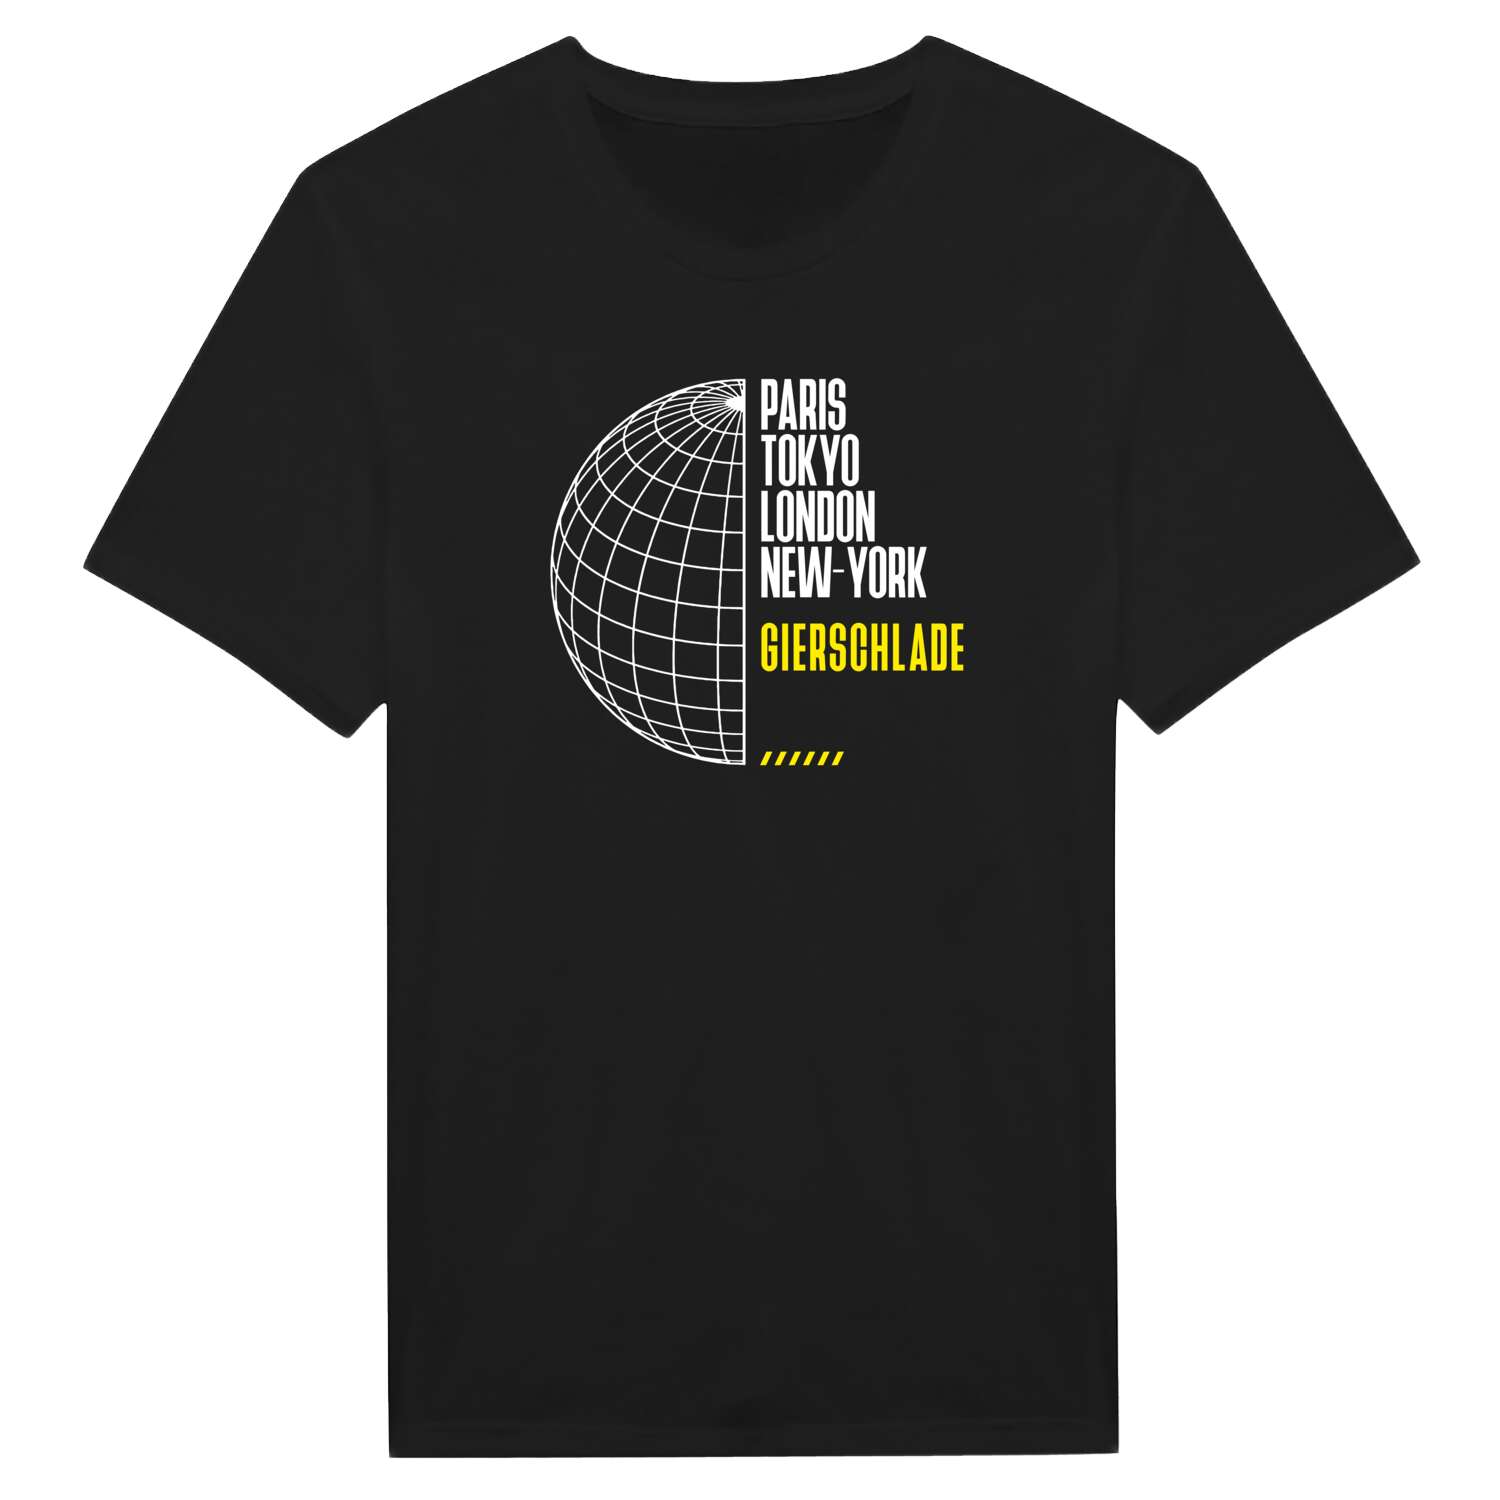 Gierschlade T-Shirt »Paris Tokyo London«